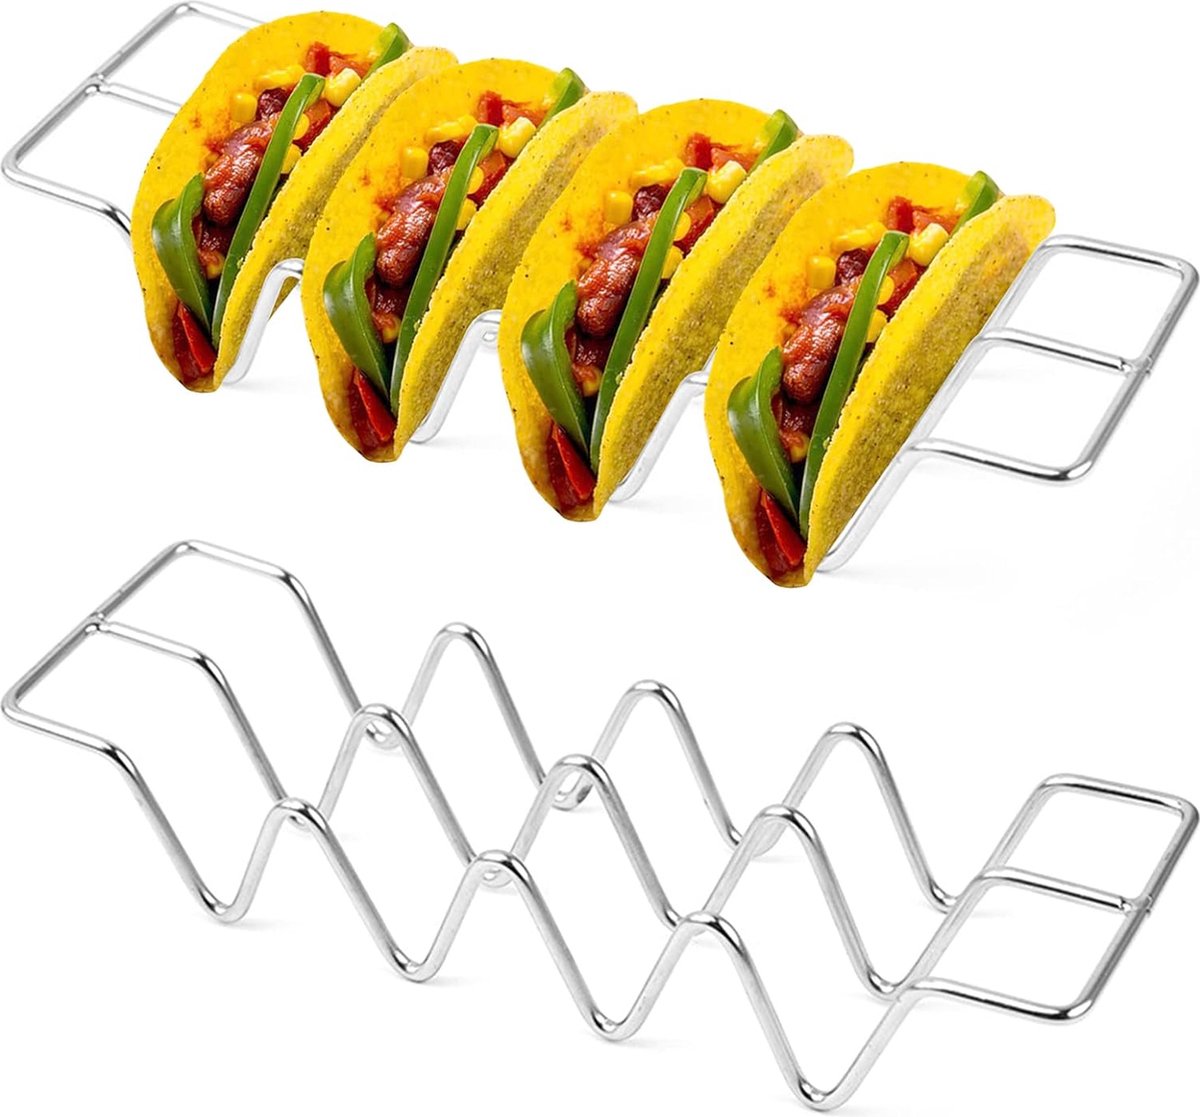 Taco standaard roestvrij staal Tacos hotdogs houder golfvorm keuken gadget gereedschap voor Fiesta Mexicana, buffetten en feestjes